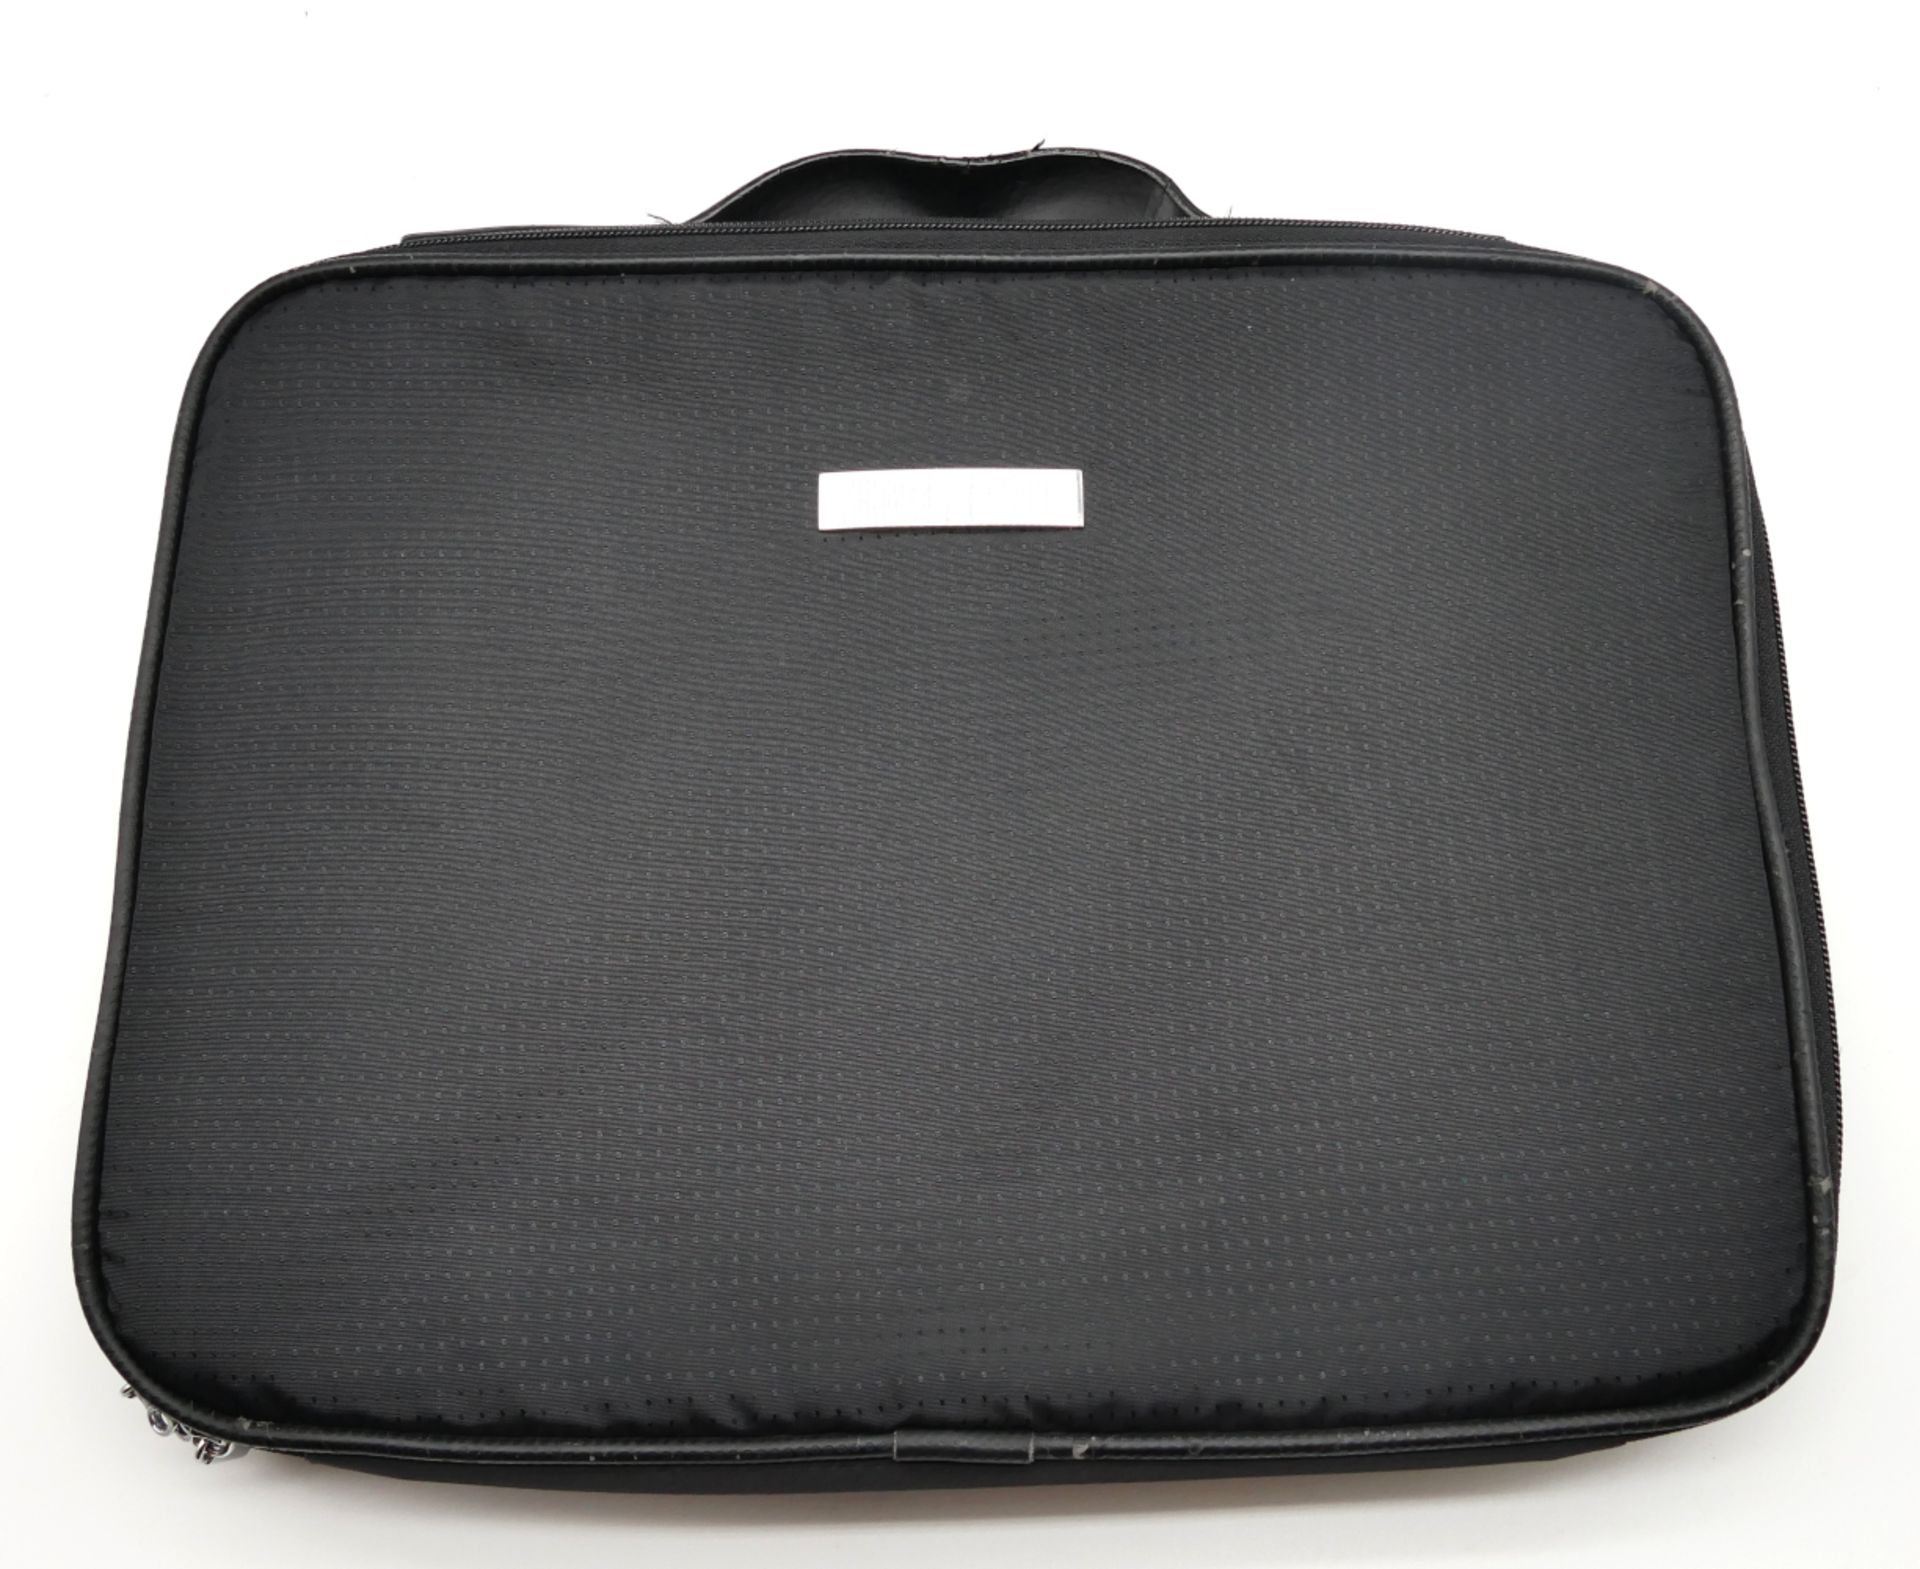 1 Laptoptasche, Textil schwarz, PORSCHE-Design, Maße ca. 25,5x35cm sowie 1 dünne Aktentasche, schwar - Bild 2 aus 2